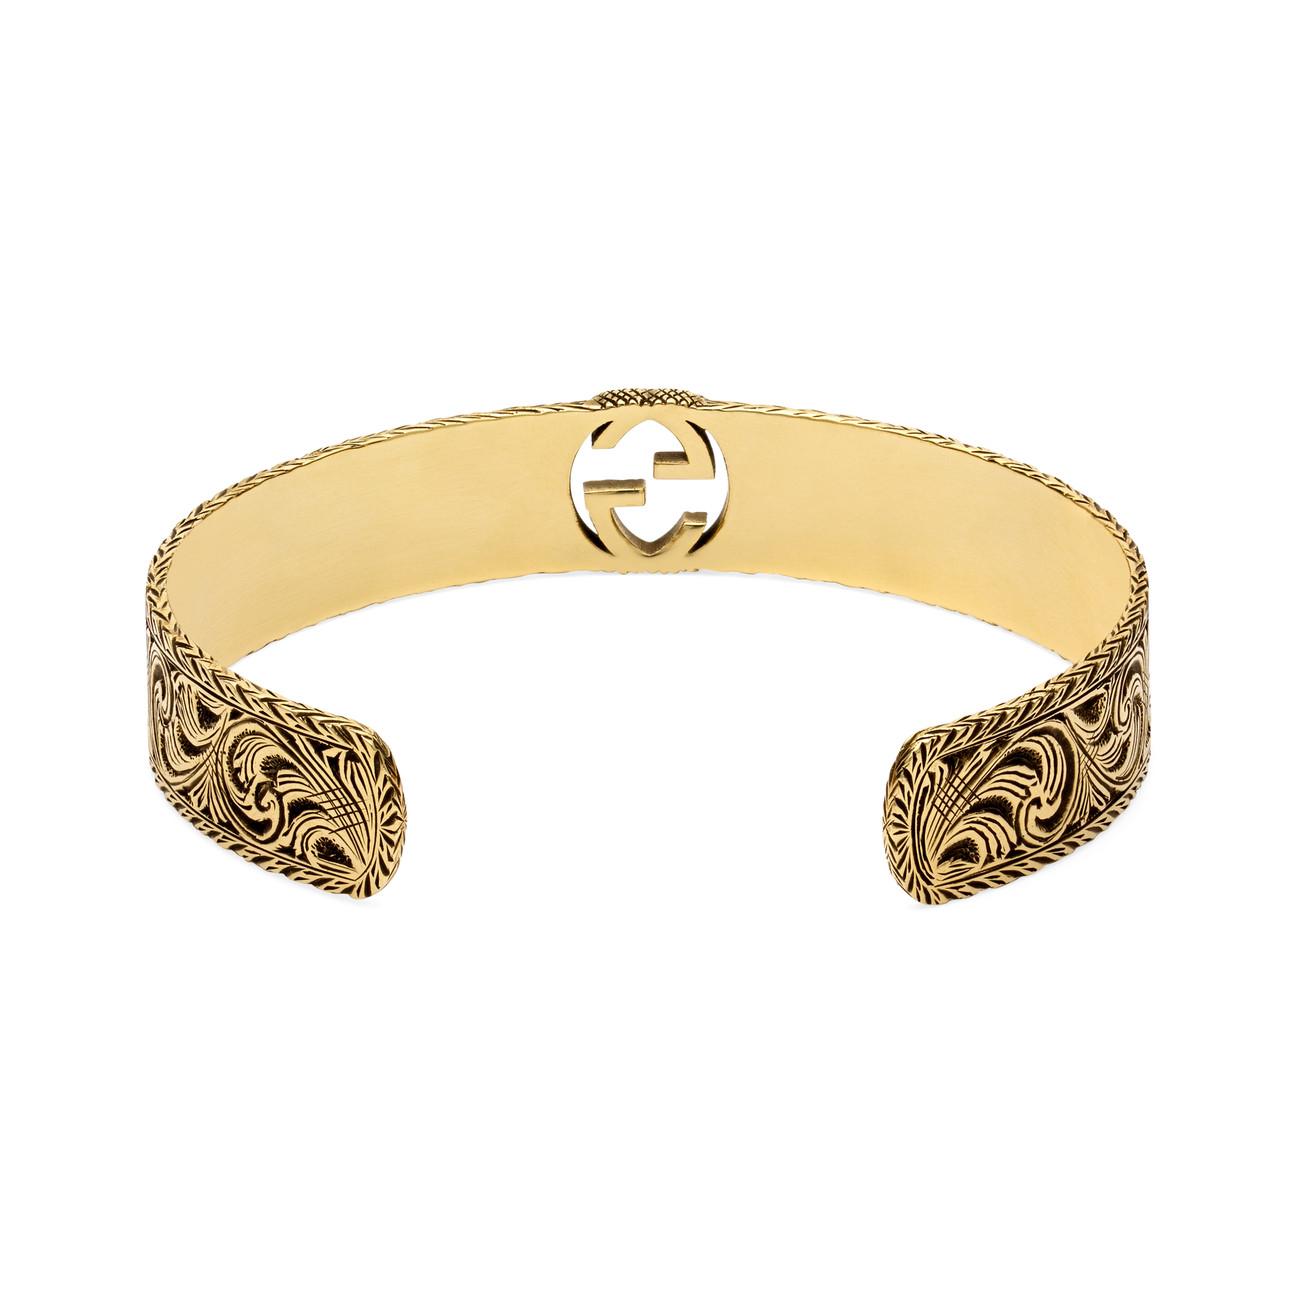 Share 70+ gucci mens gold cuff bracelets - in.duhocakina